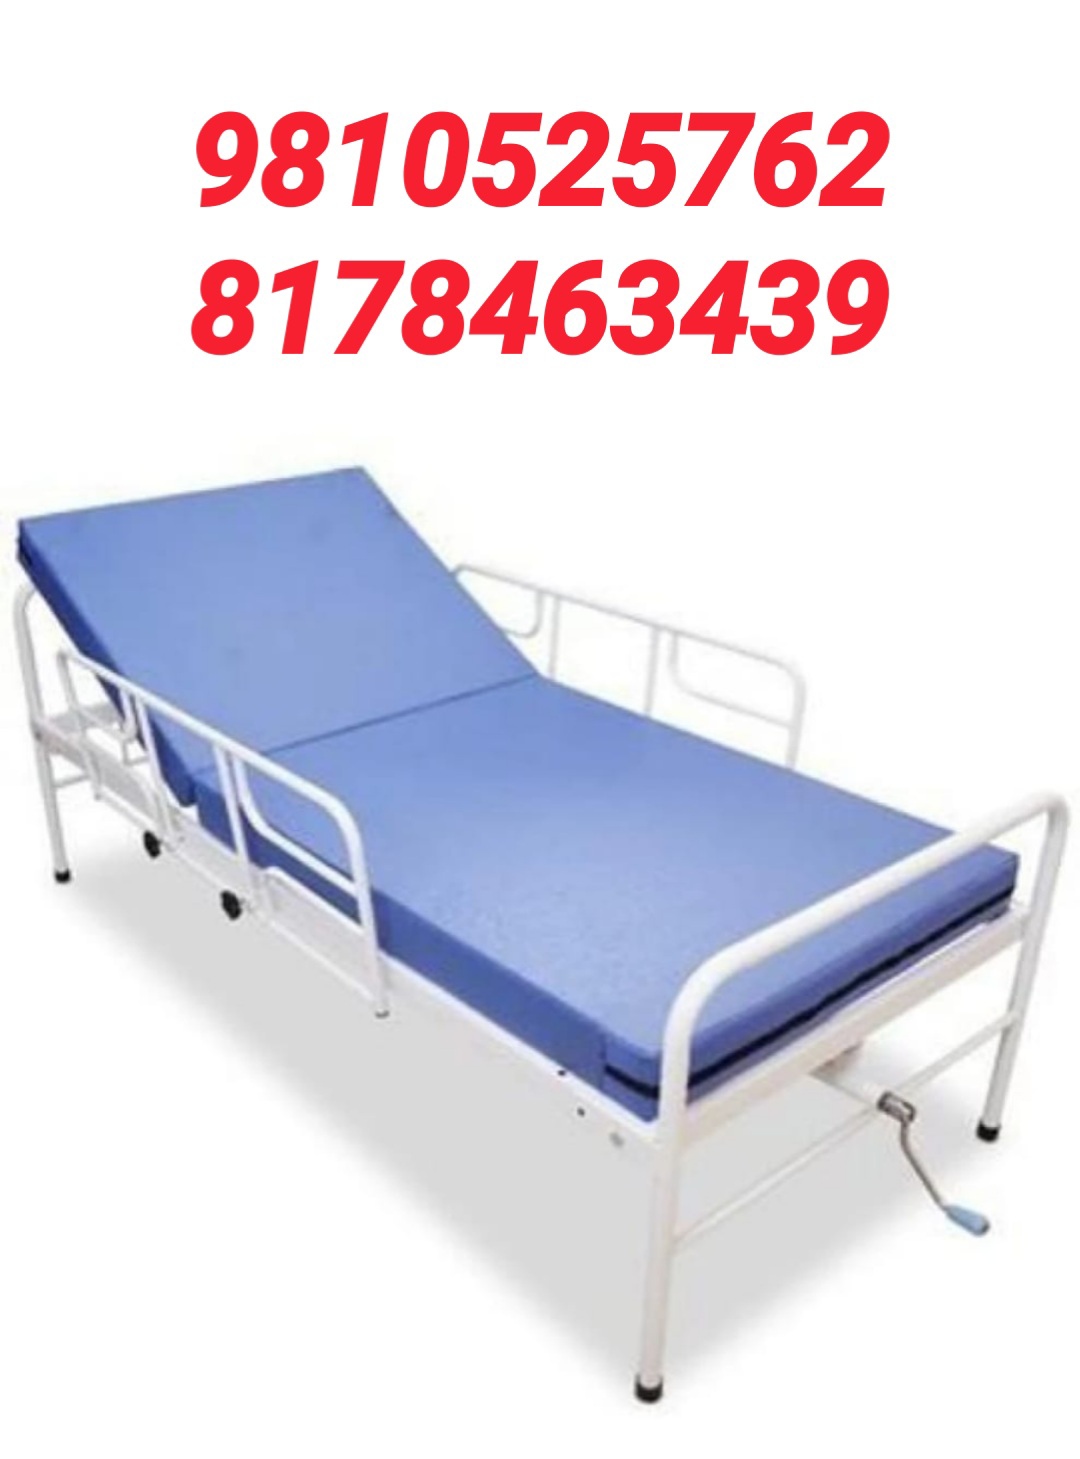 Hospital Bed Rent Geeta Colony Delhi 8178463439